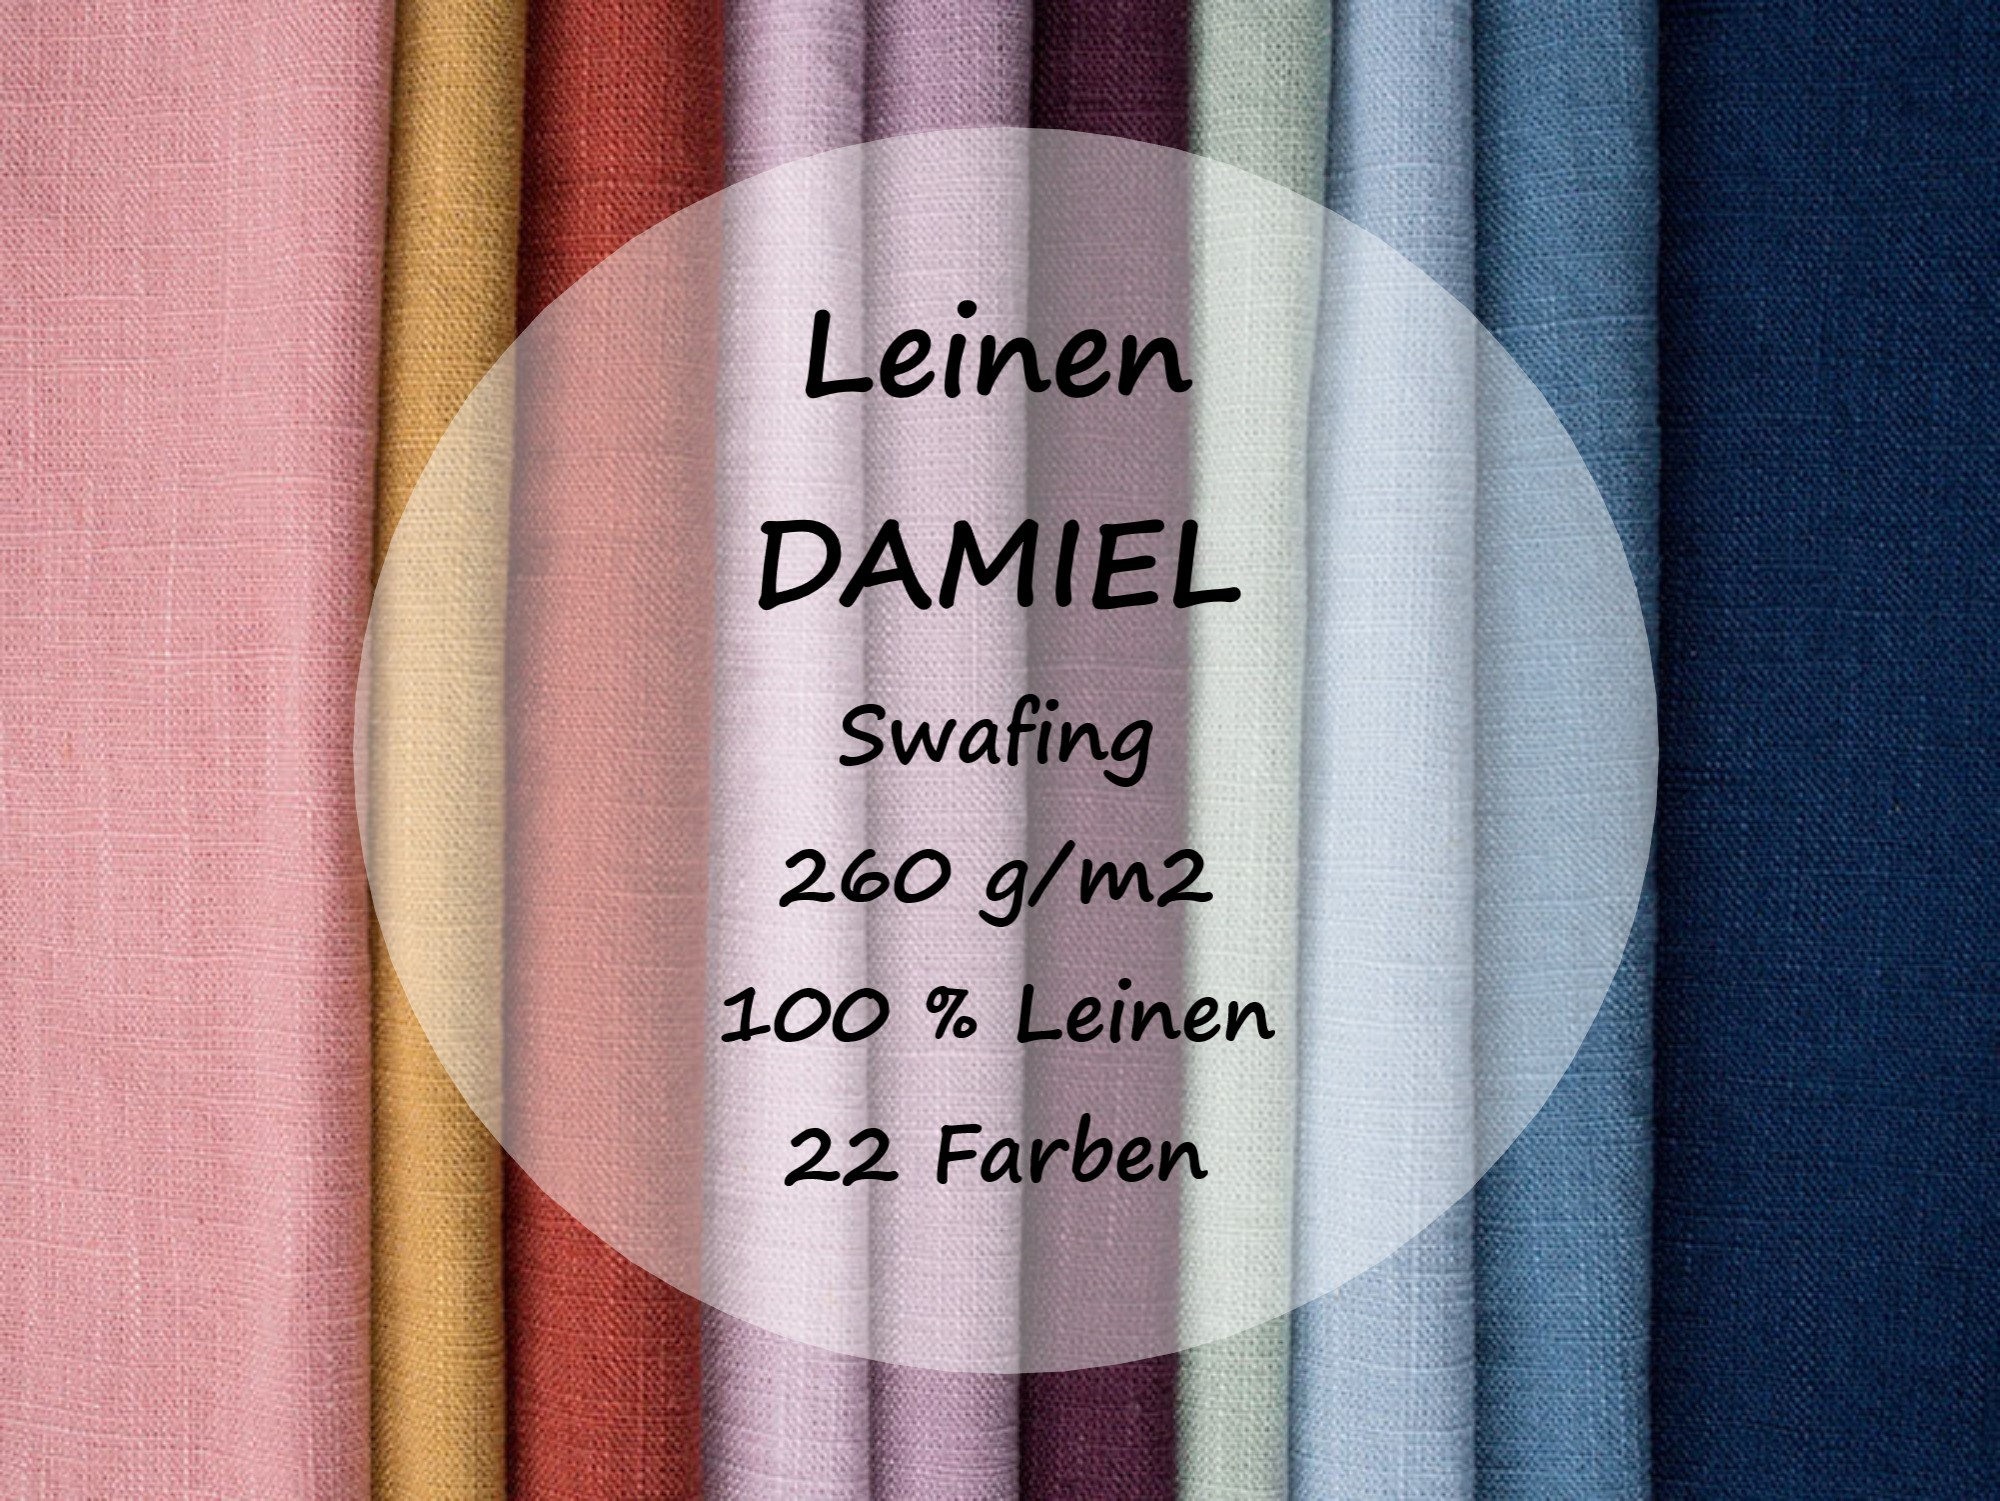 Leinen DAMIEL Swafing Vorgewaschen / 22 Farben / 100 % Leinen - Etsy